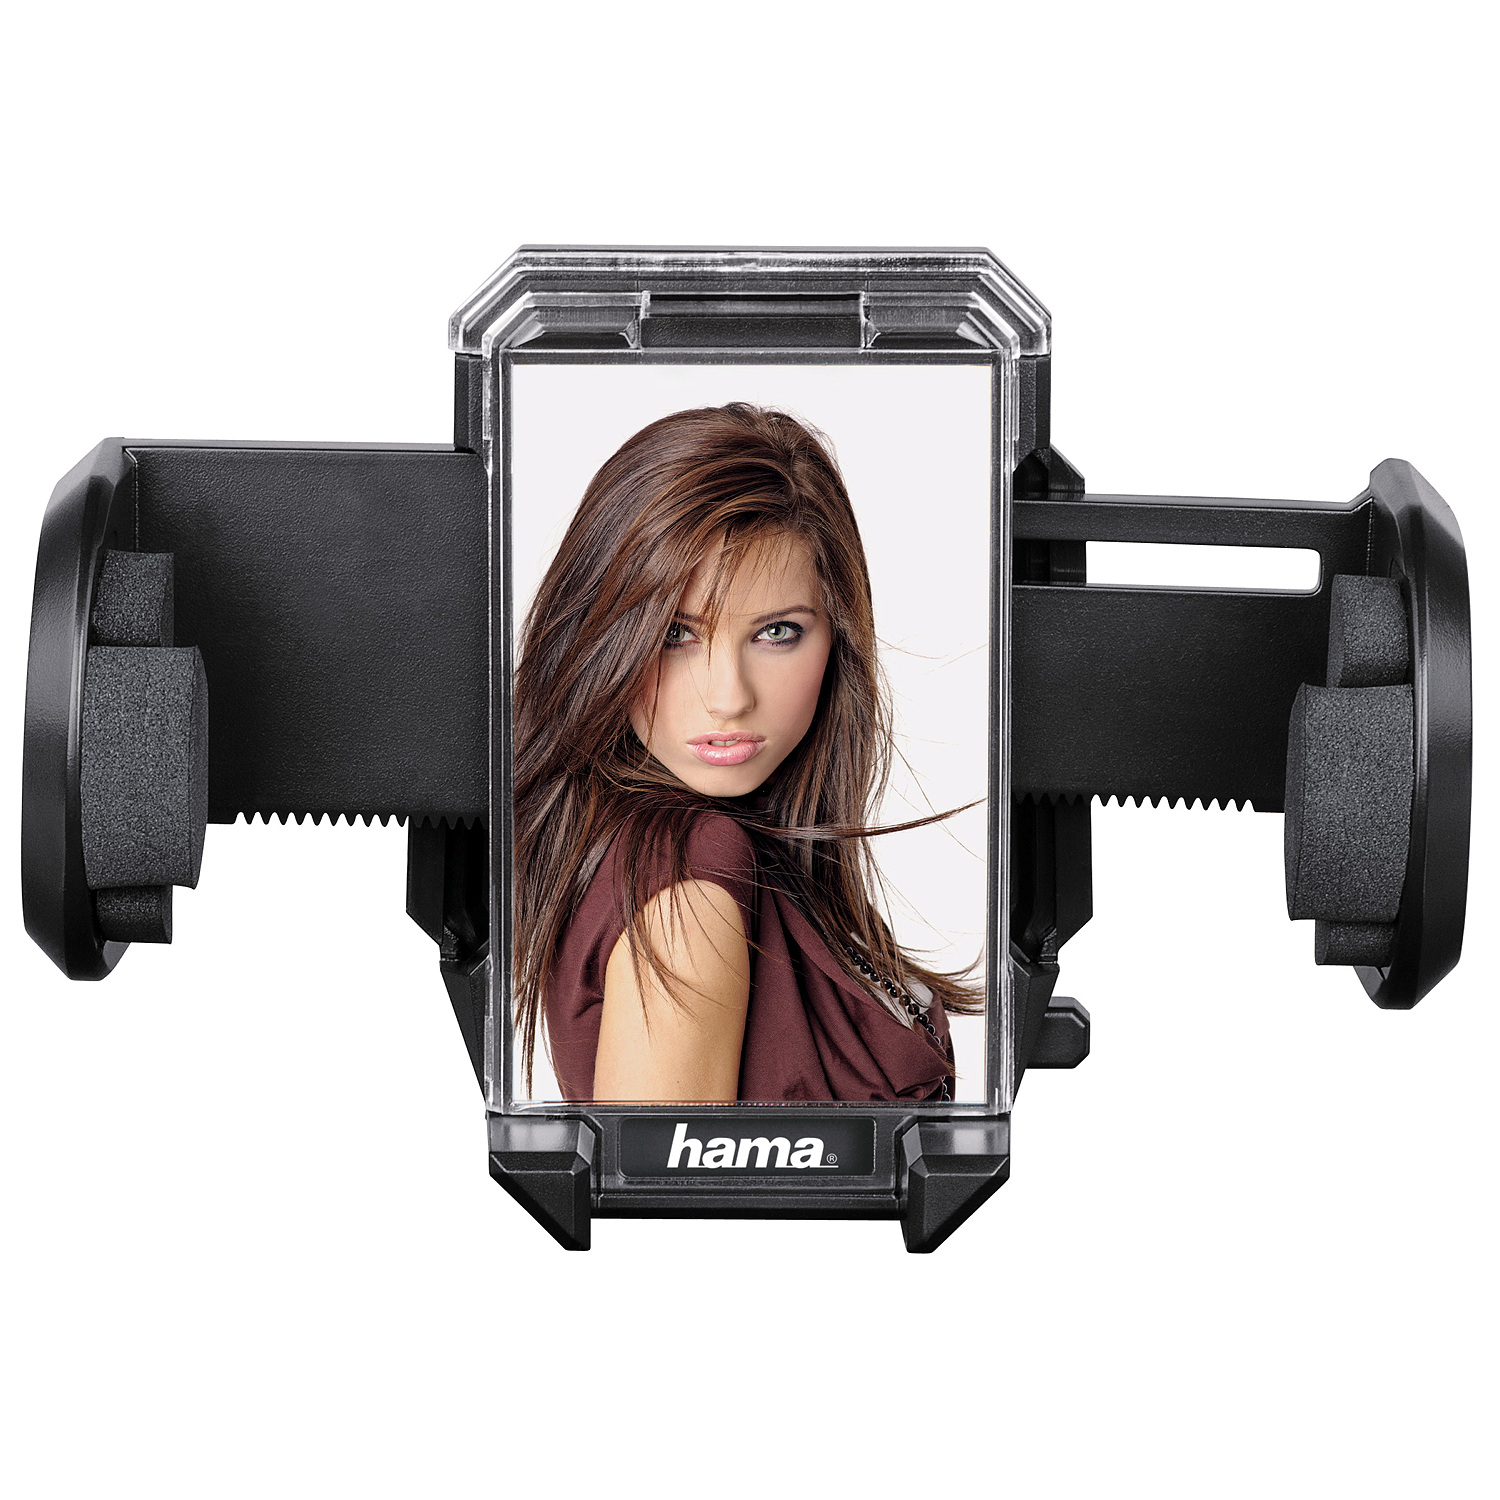 hama Universal-Smartphone-Halter-Set, für Geräte mit einer Breite von 4 - 1